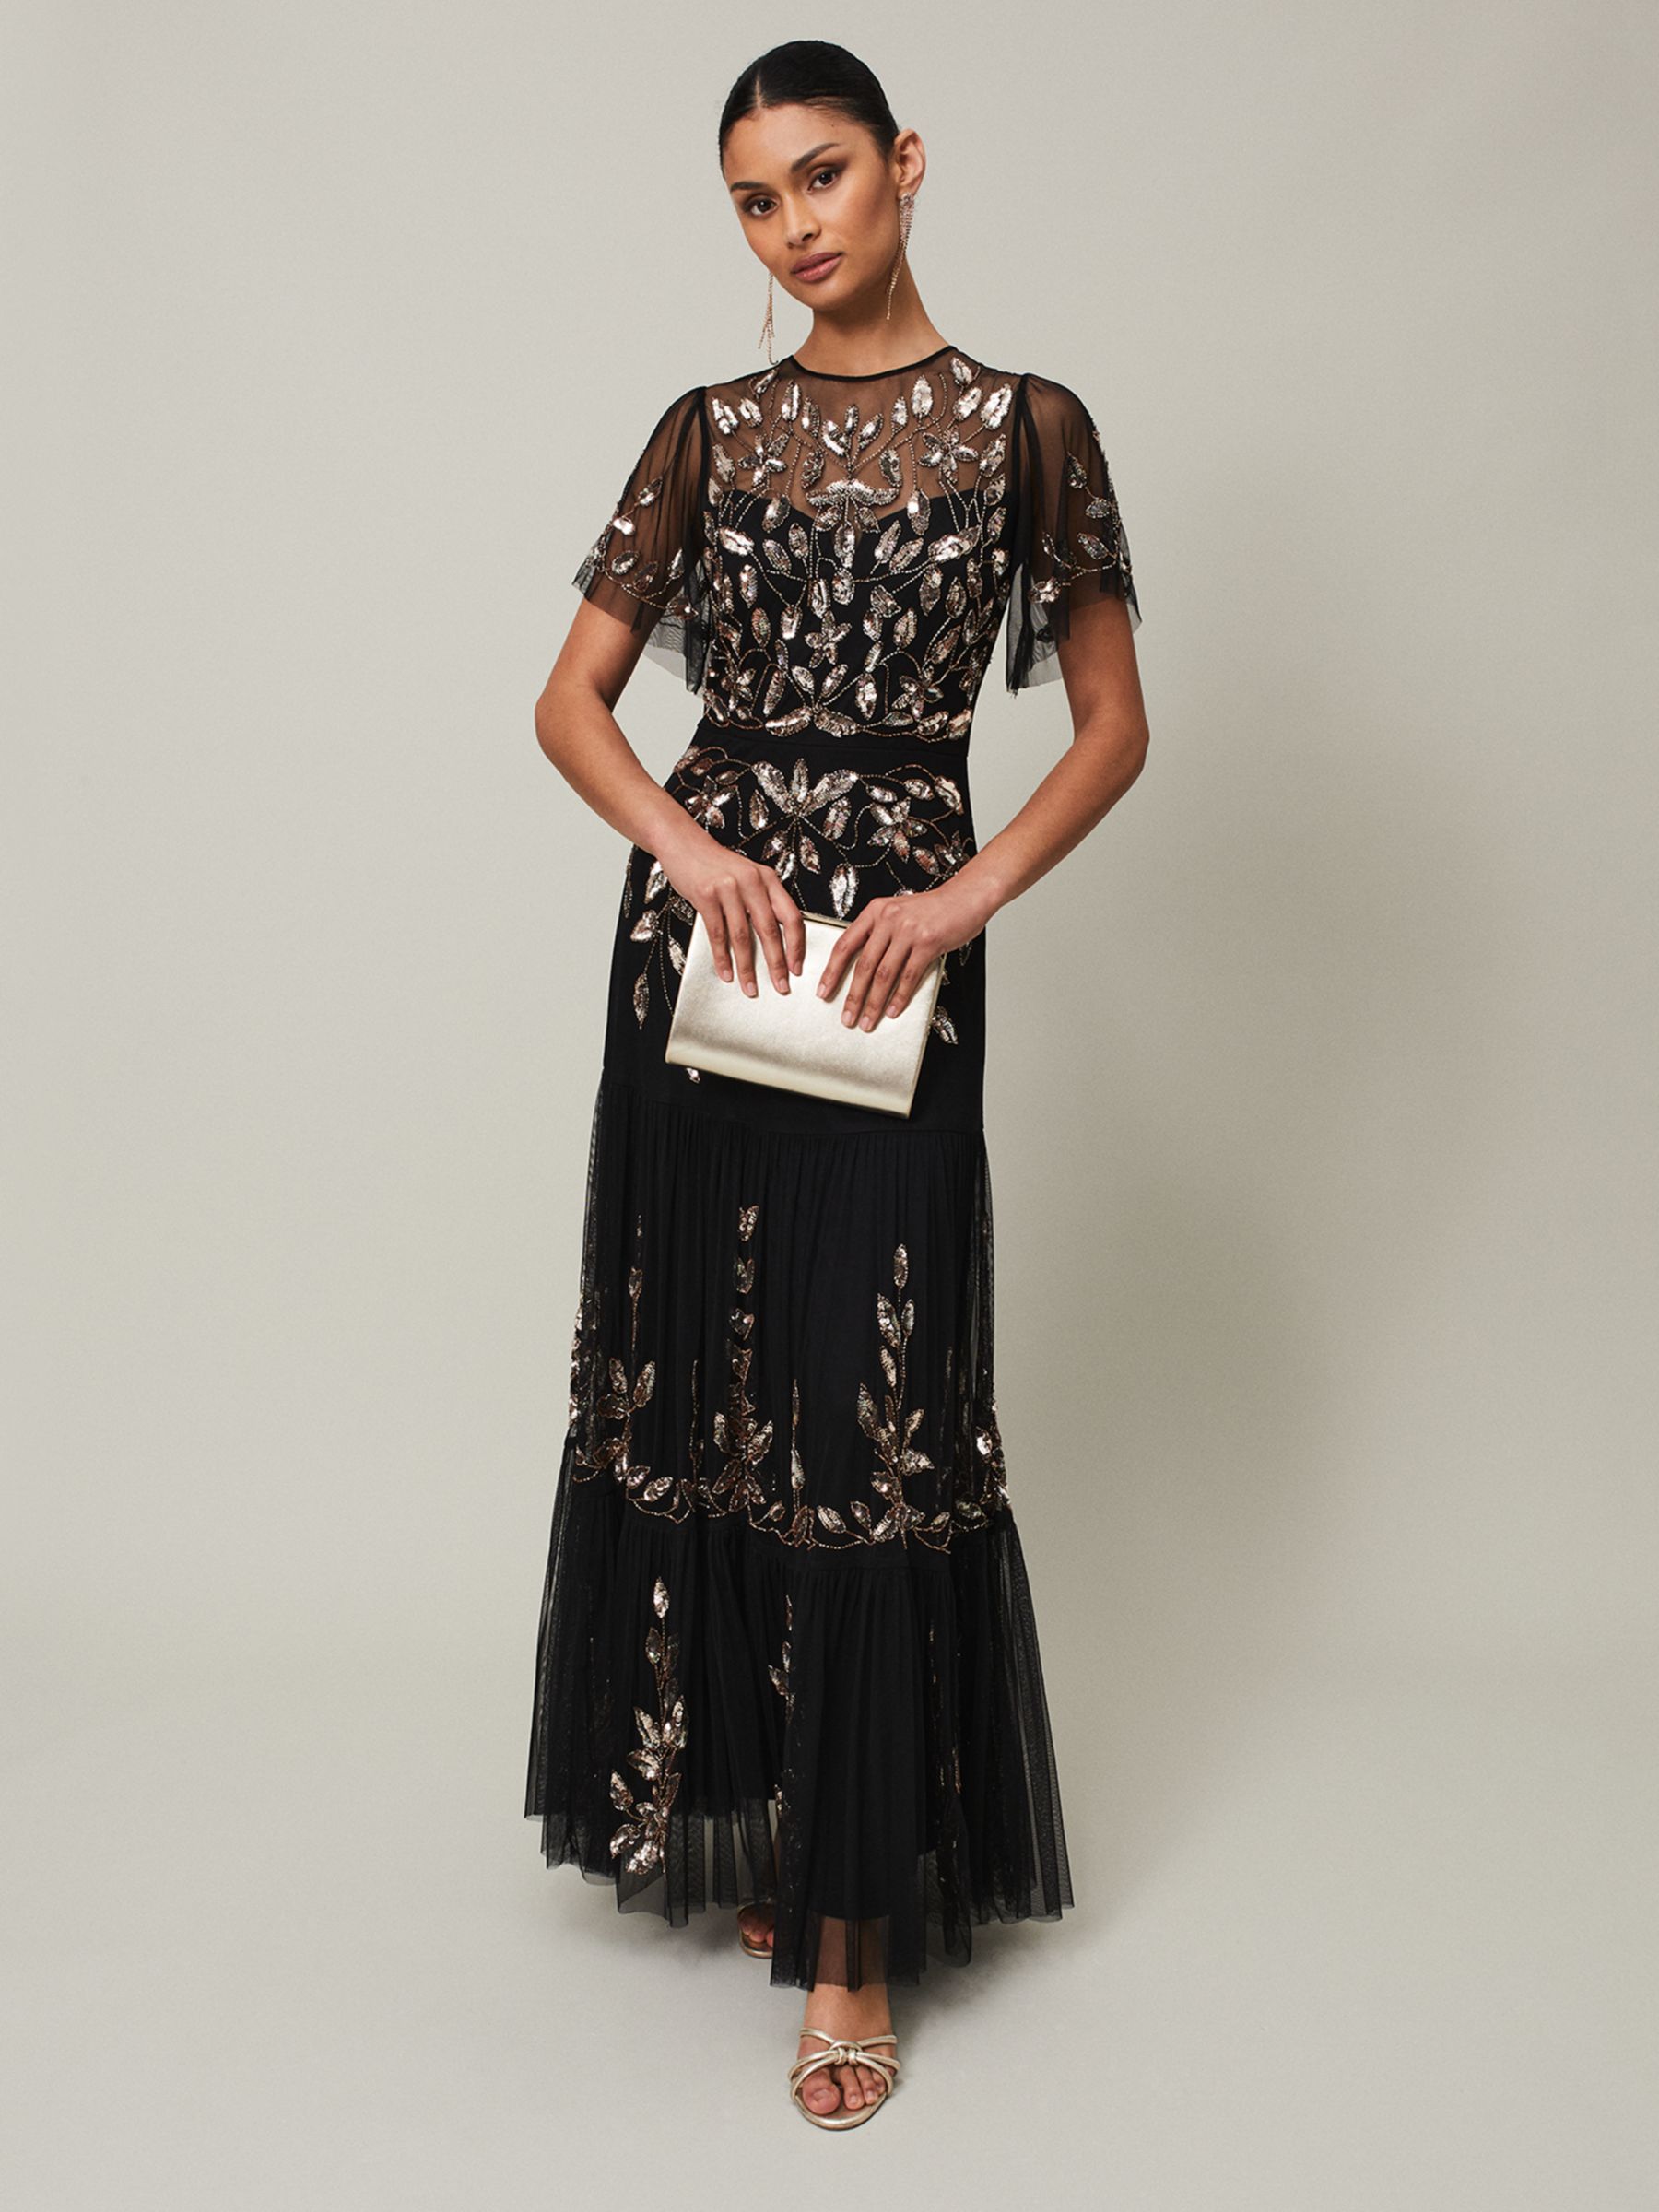 Phase Eight Hilary Leaf Embellished Maxi Dress, Black/Bronze, 26